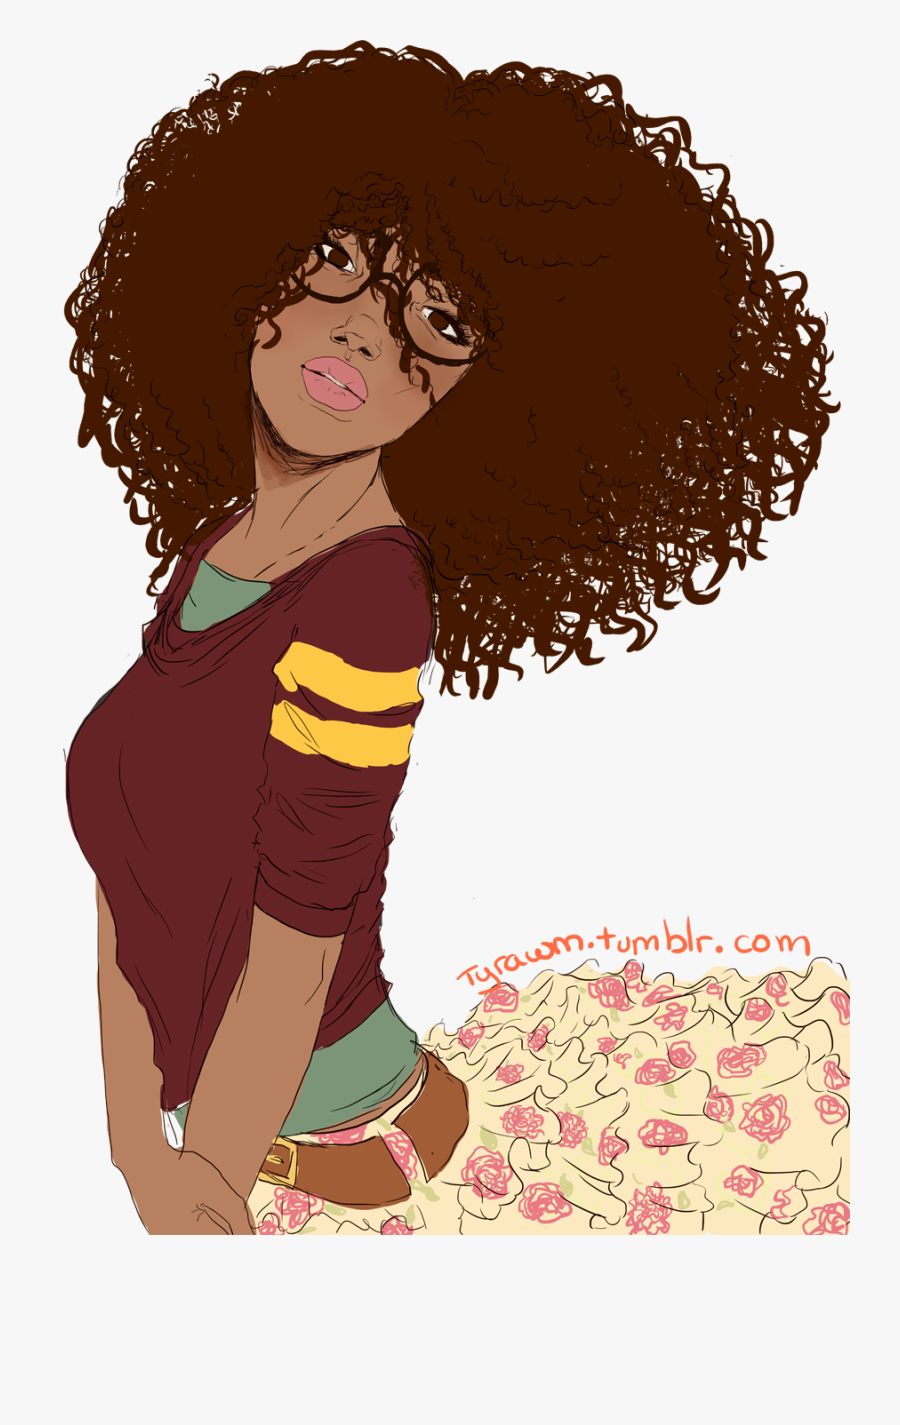 Drawn Curl Clipart - Cartoon Curly Hair Girl , Free Transparent Clipart